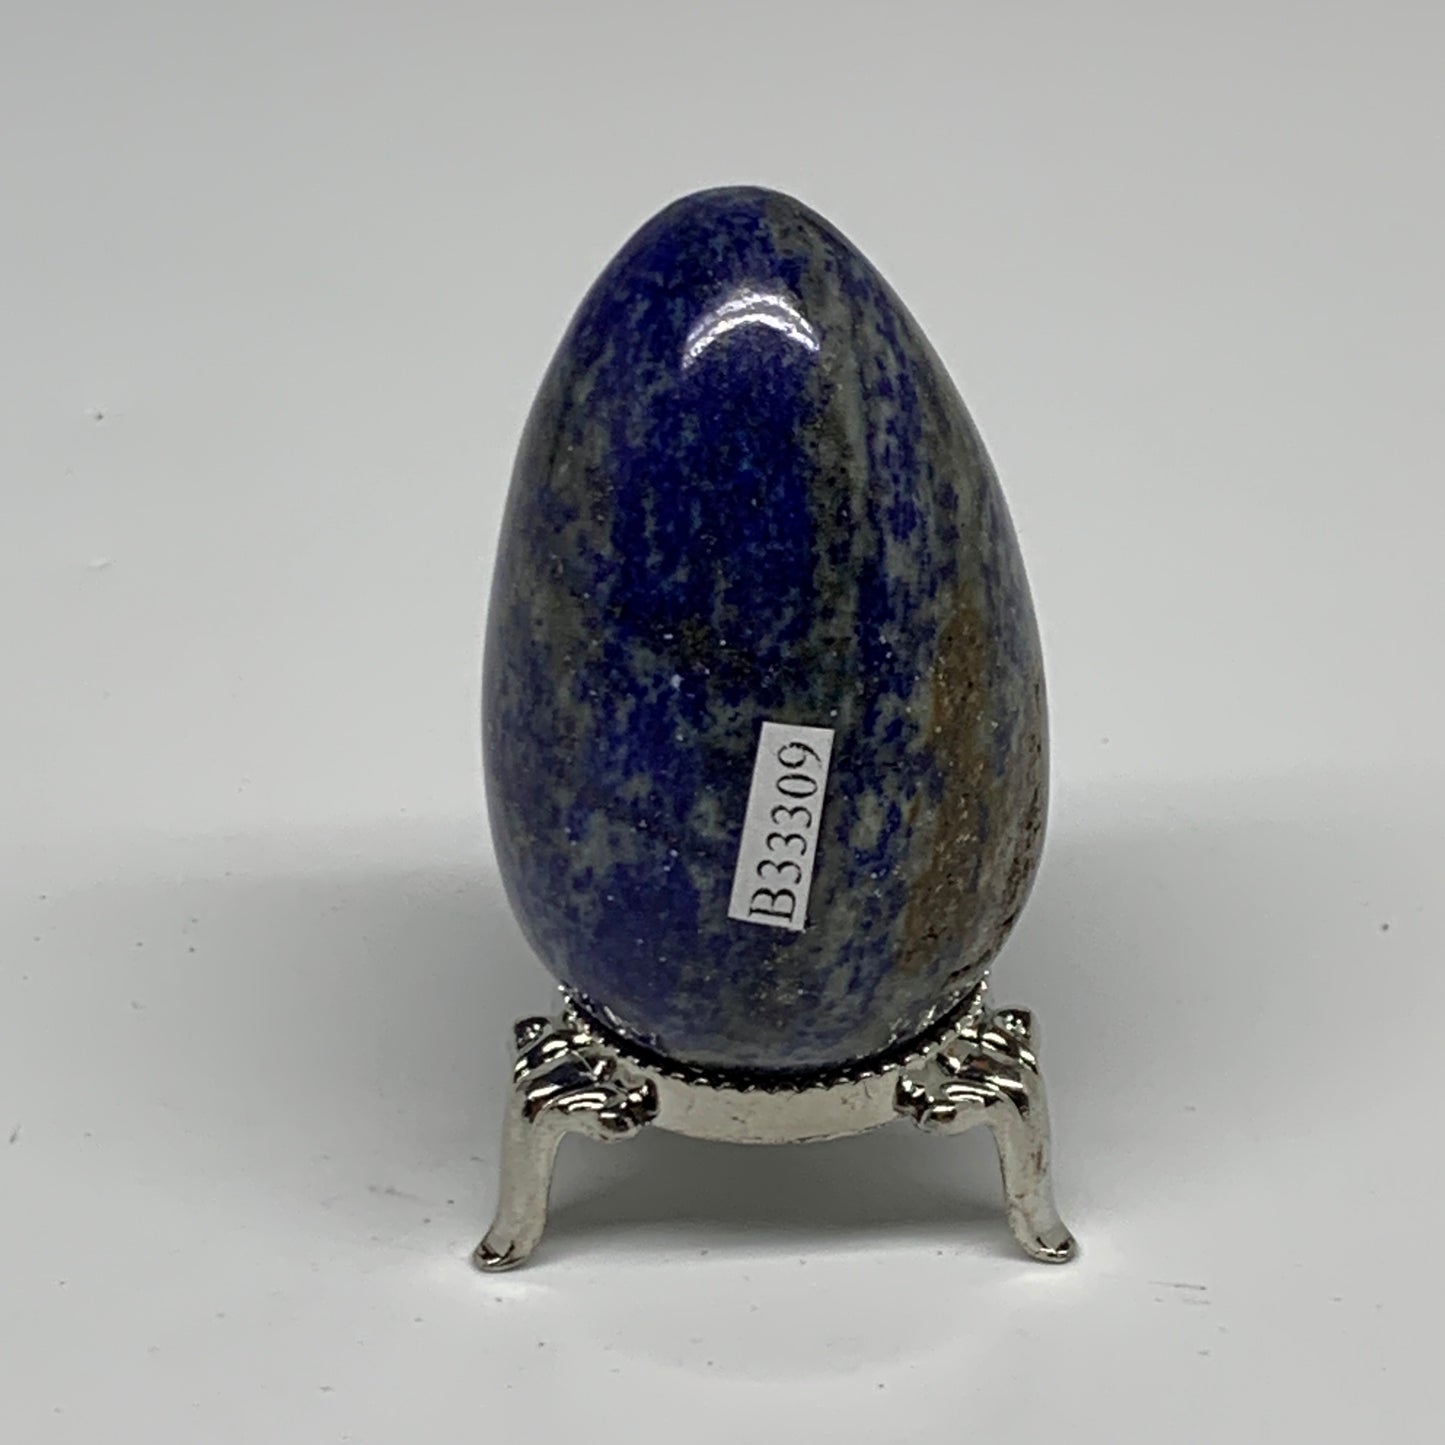 0.46 lbs, 2.6"x1.8", Natural Lapis Lazuli Egg Polished @Afghanistan, B33309